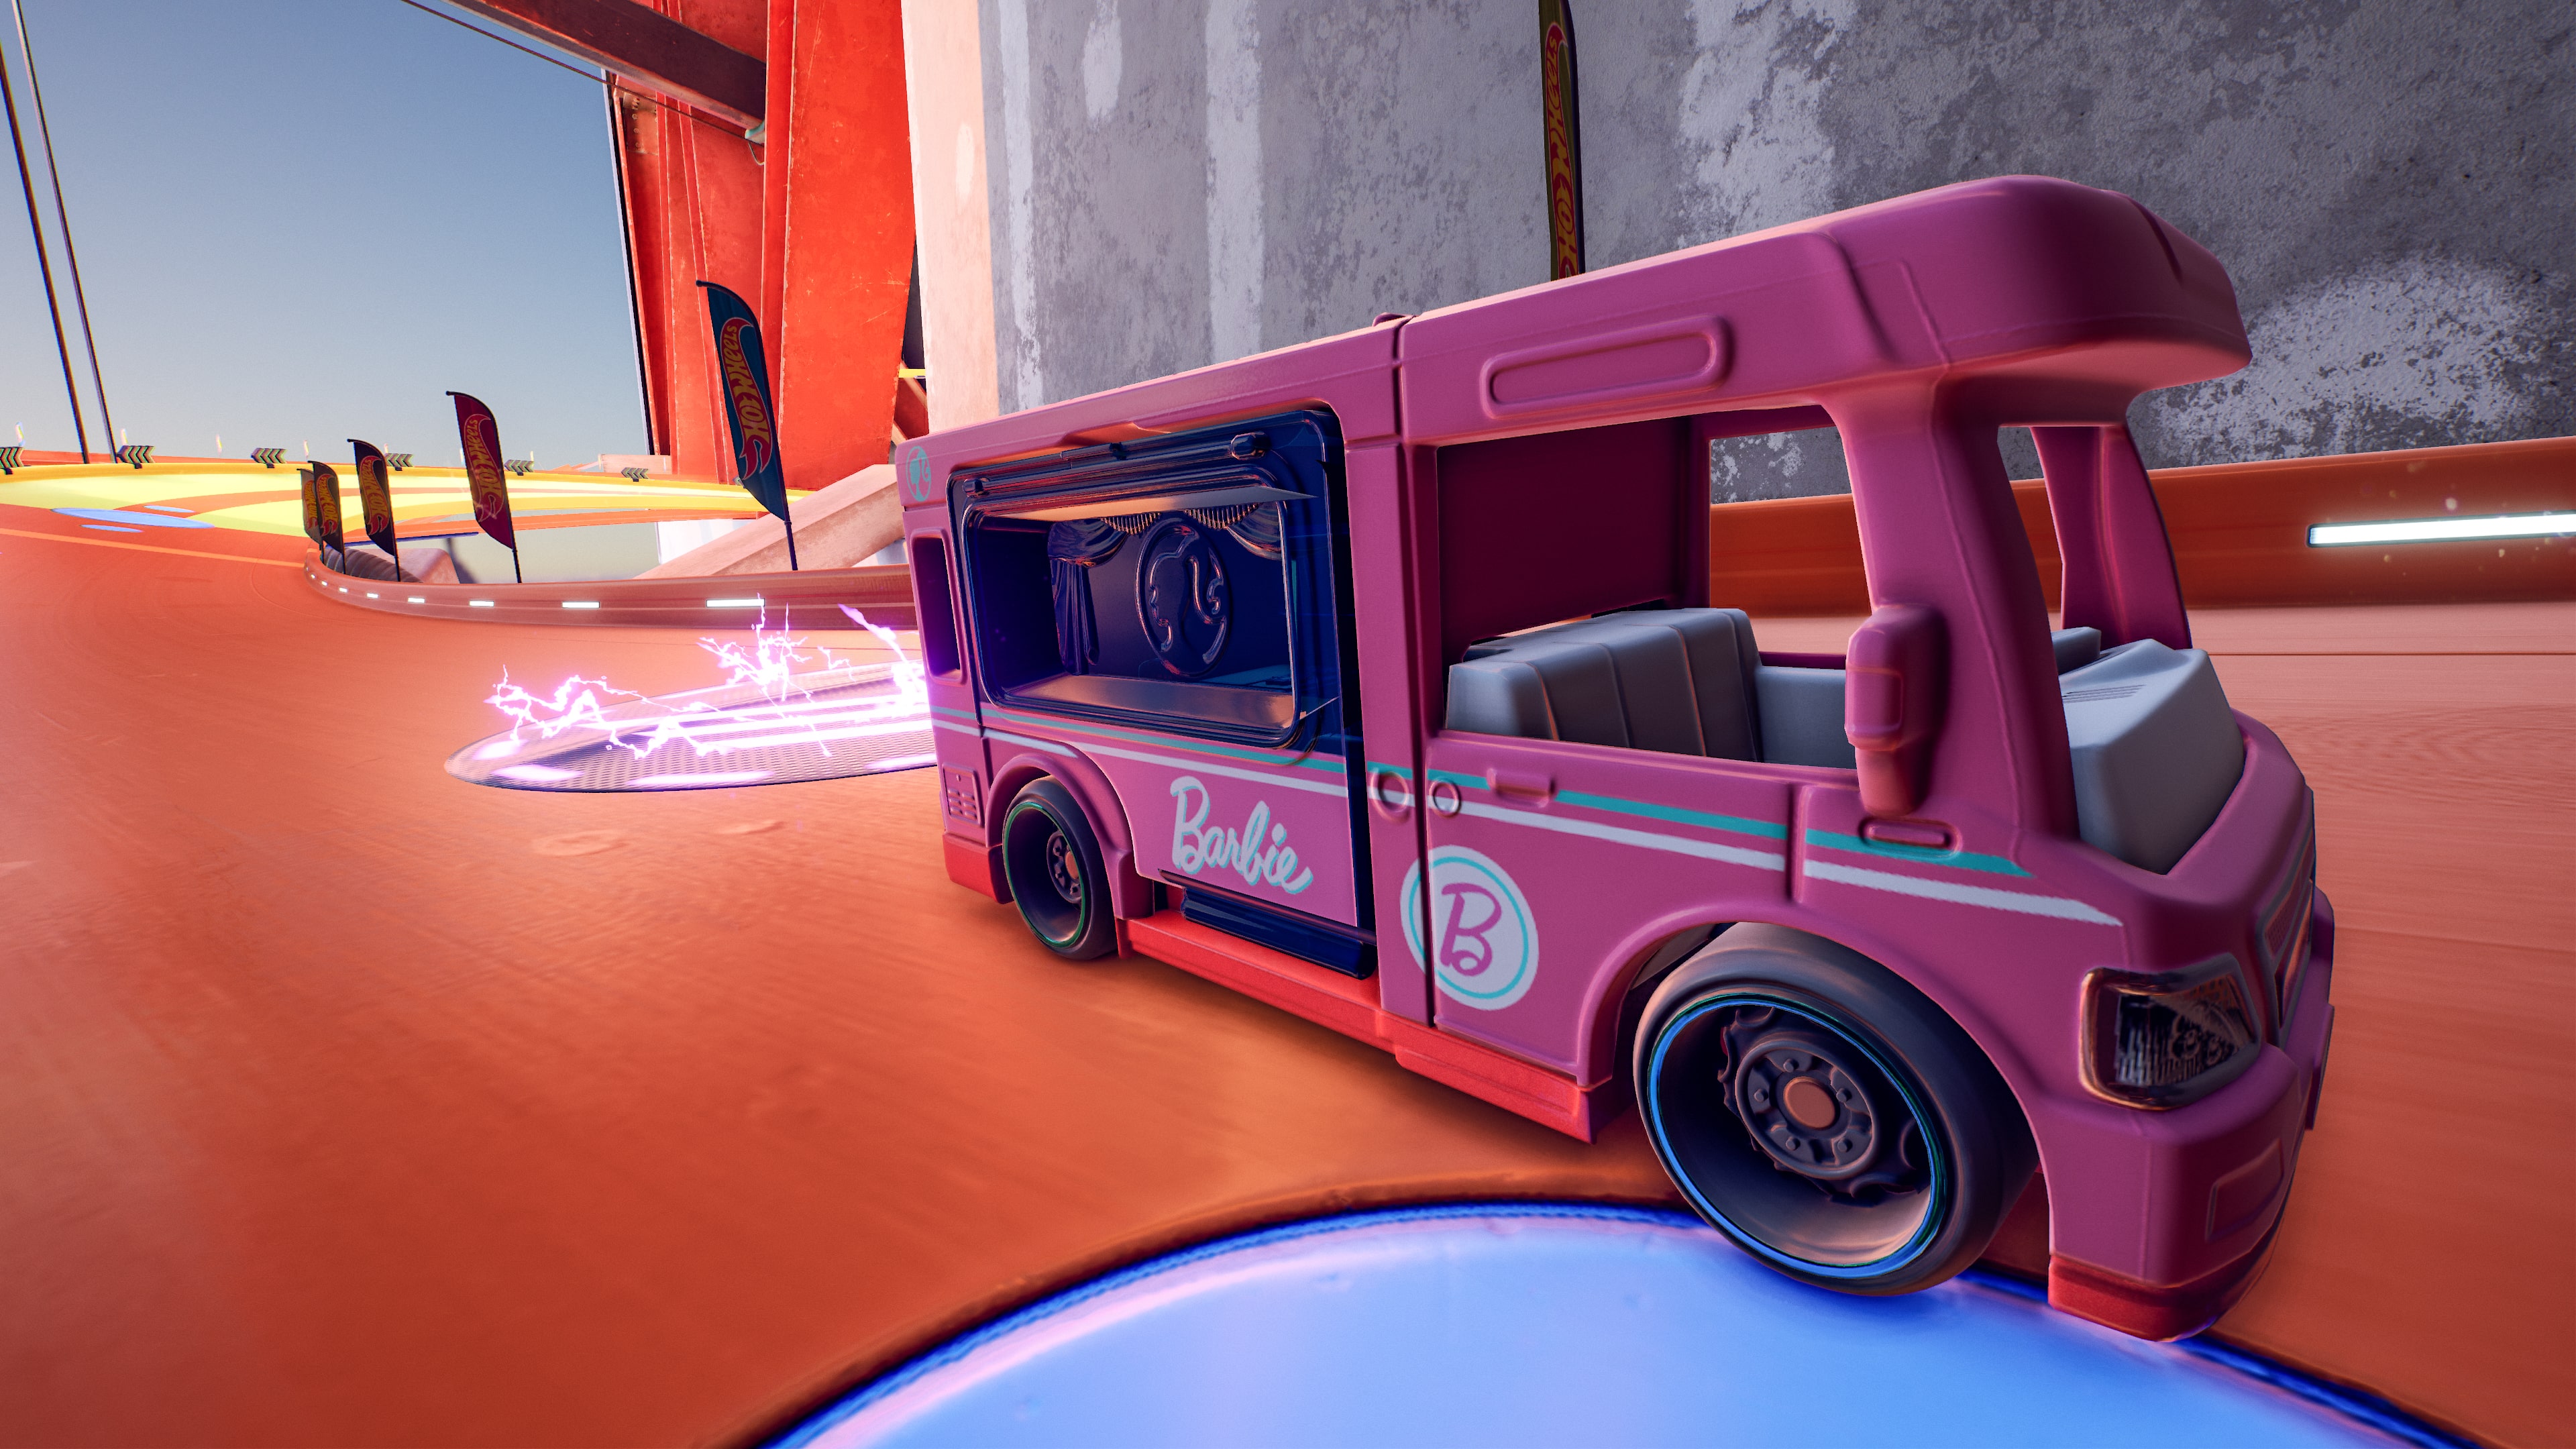 Hot Wheels Barbie Dream Camper Van Adventure RV Pink GRX39 Toy Car